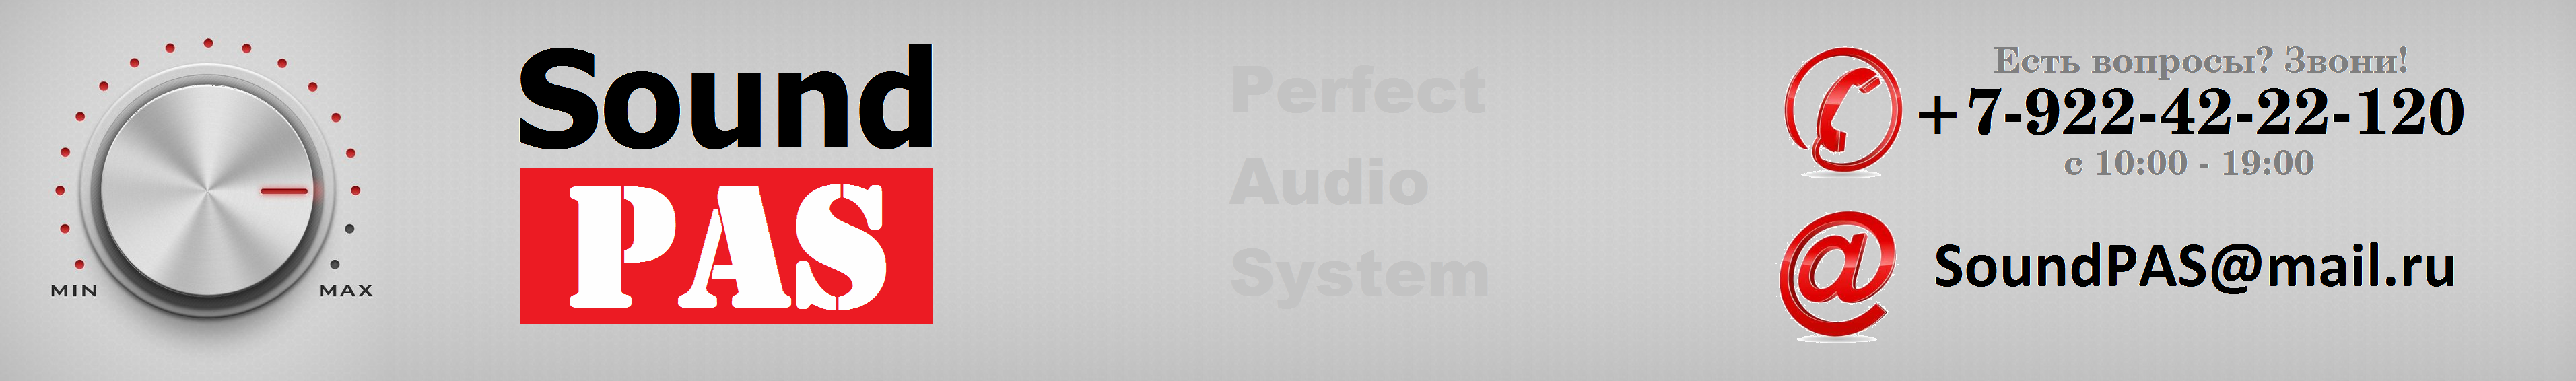 Sound Pas - Профессиональная аудио и светотехника